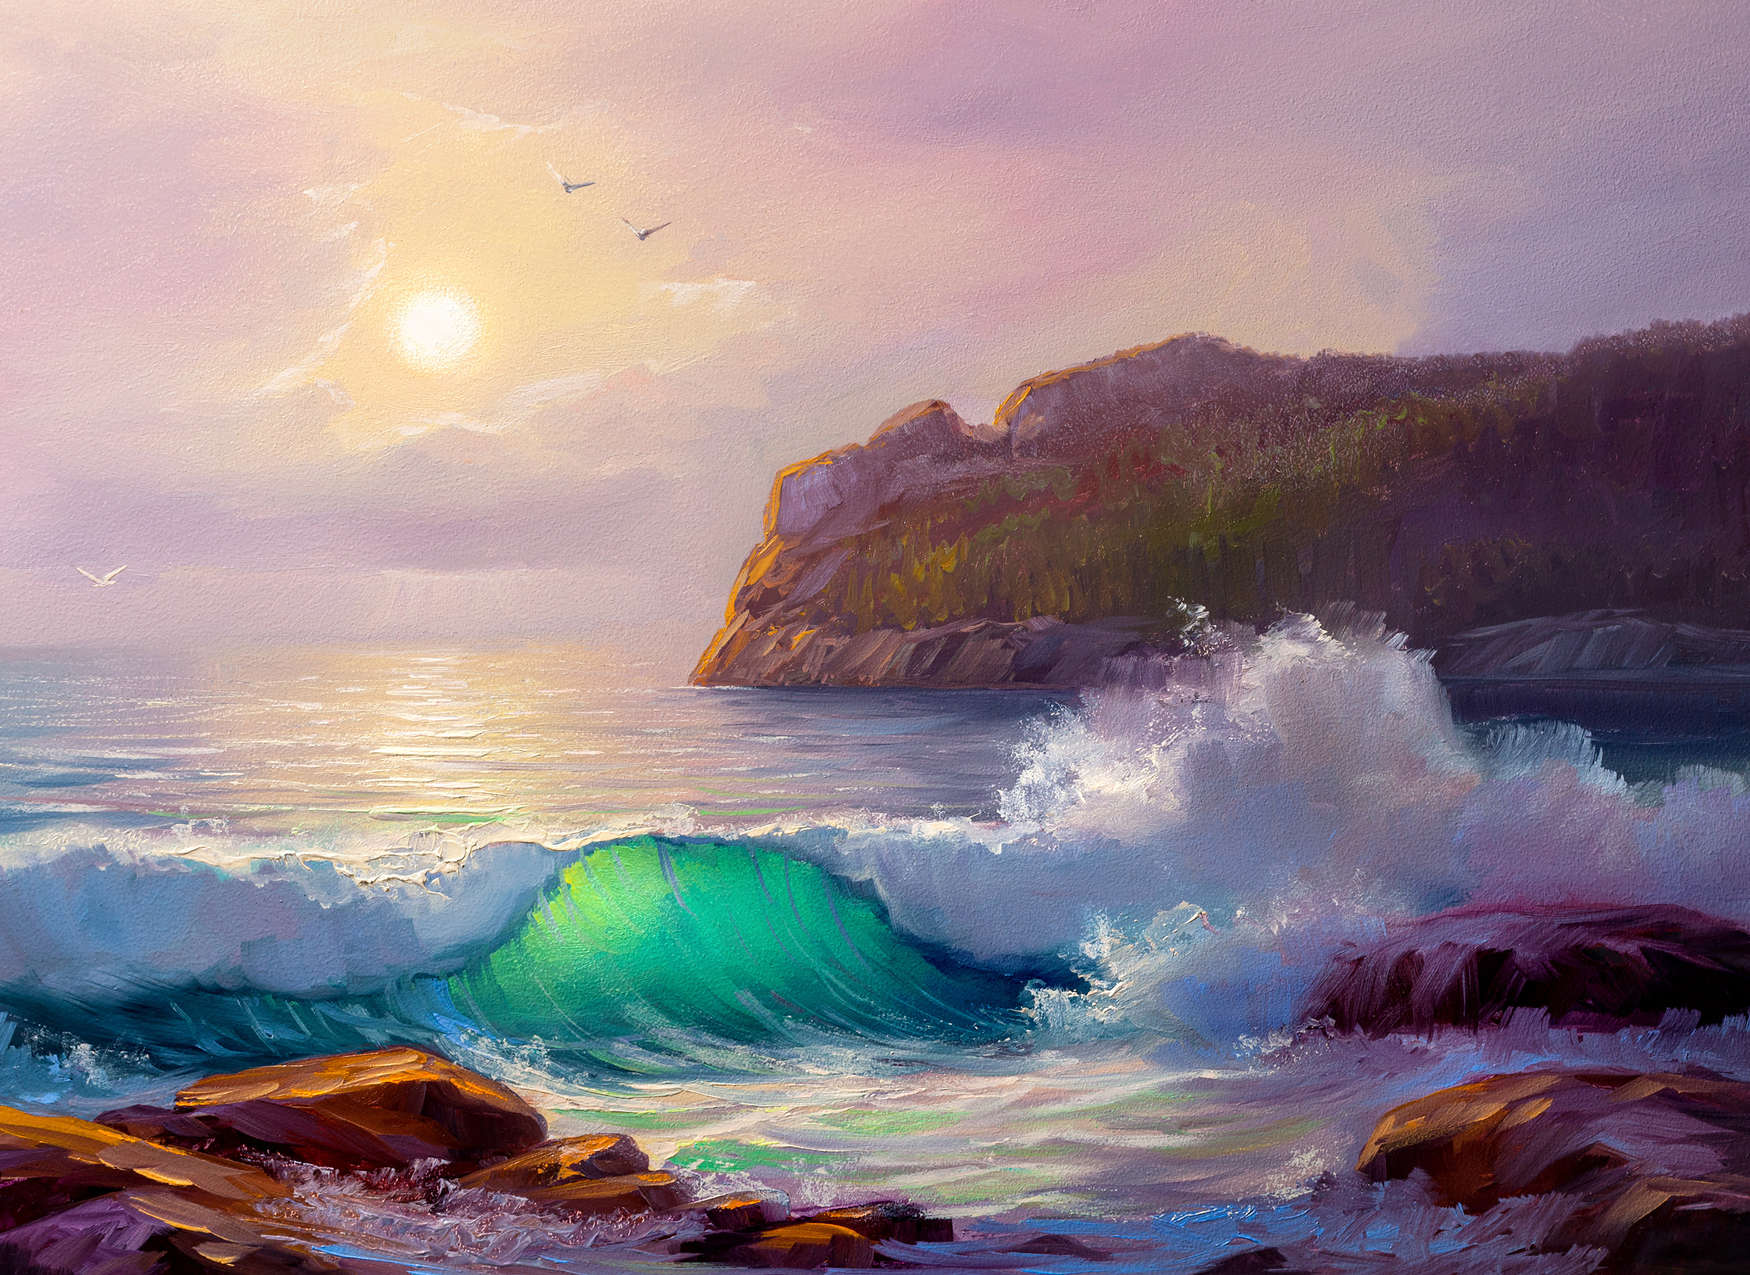             Pittura murale di una costa all'alba - Blu, viola, marrone
        